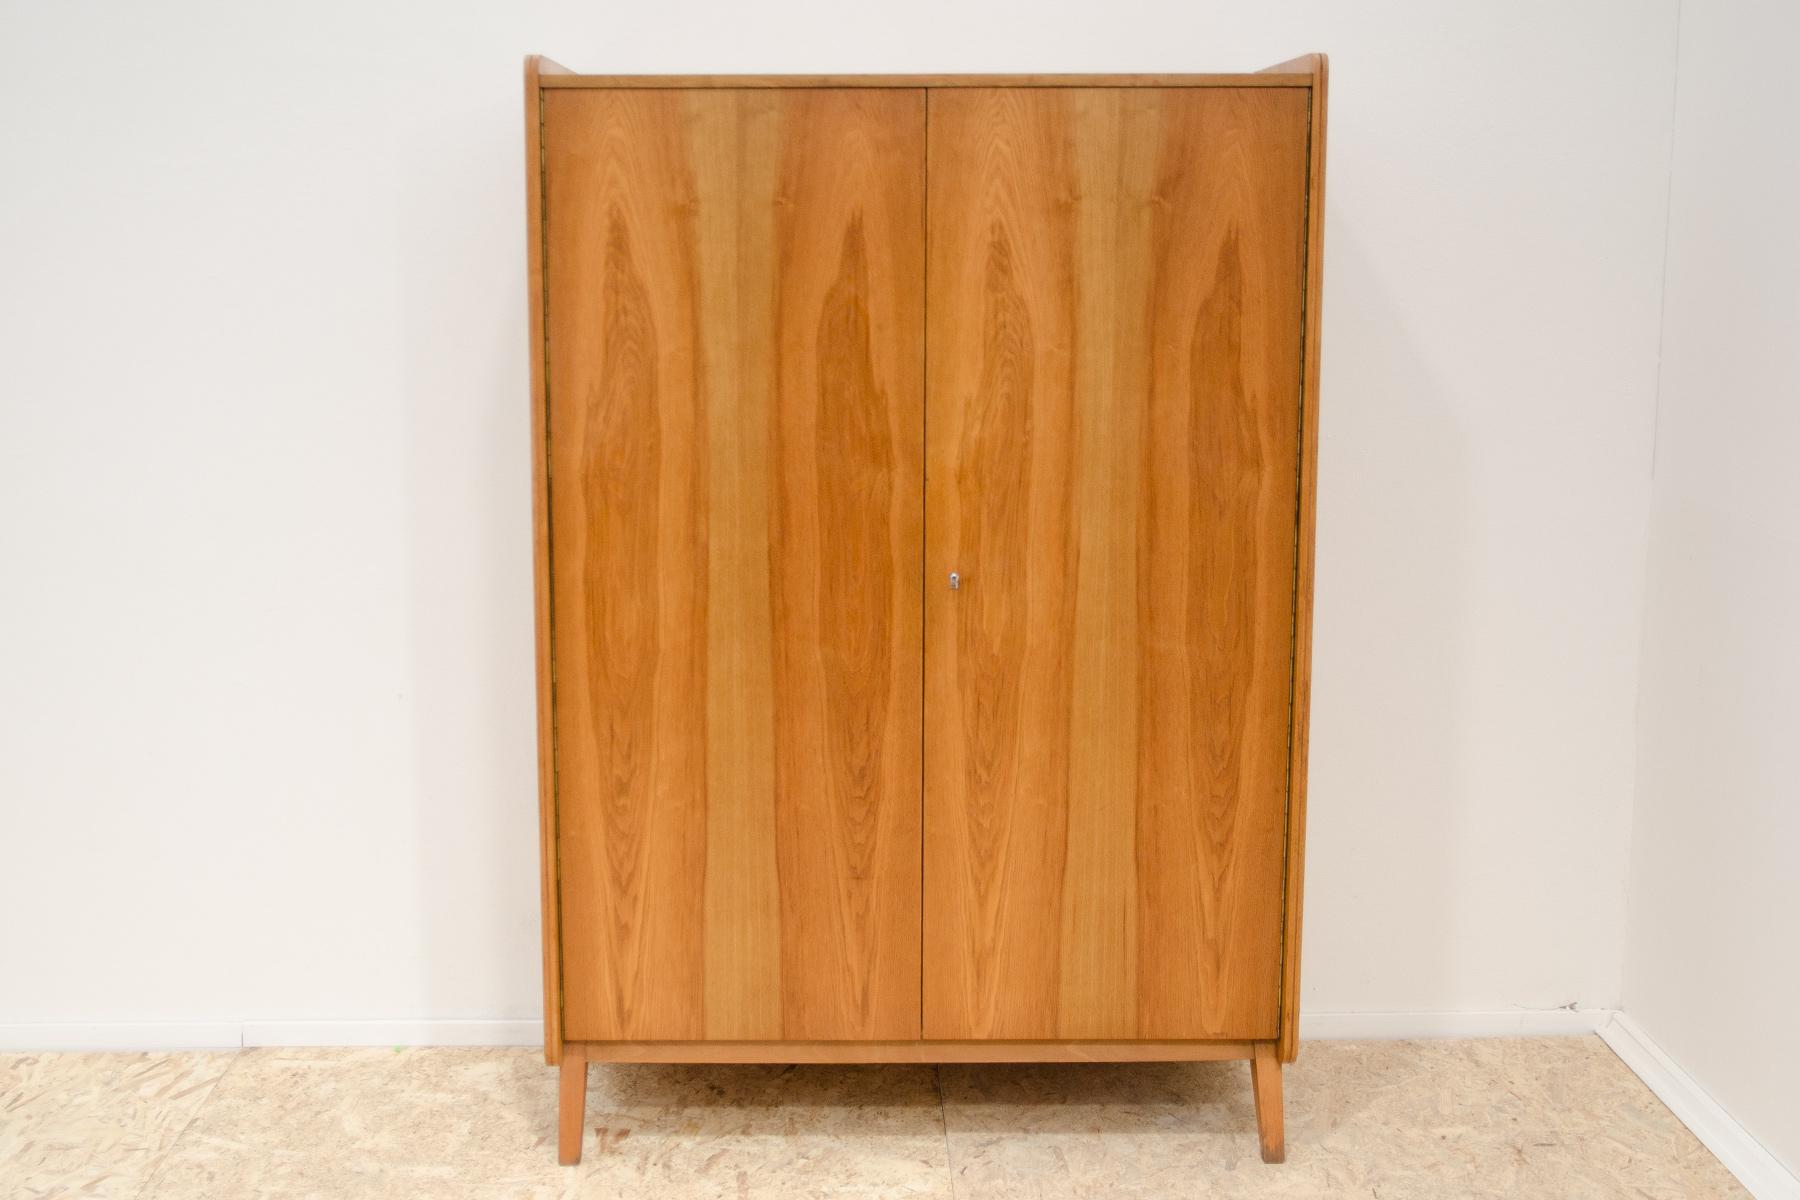 Cette armoire a été conçue par František Jirák pour la société Tatra nábytok dans l'ancienne Tchécoslovaquie dans les années 1960.

Il est fabriqué en bois de frêne et en contreplaqué.

Vous pouvez y suspendre vos vêtements,  placer des